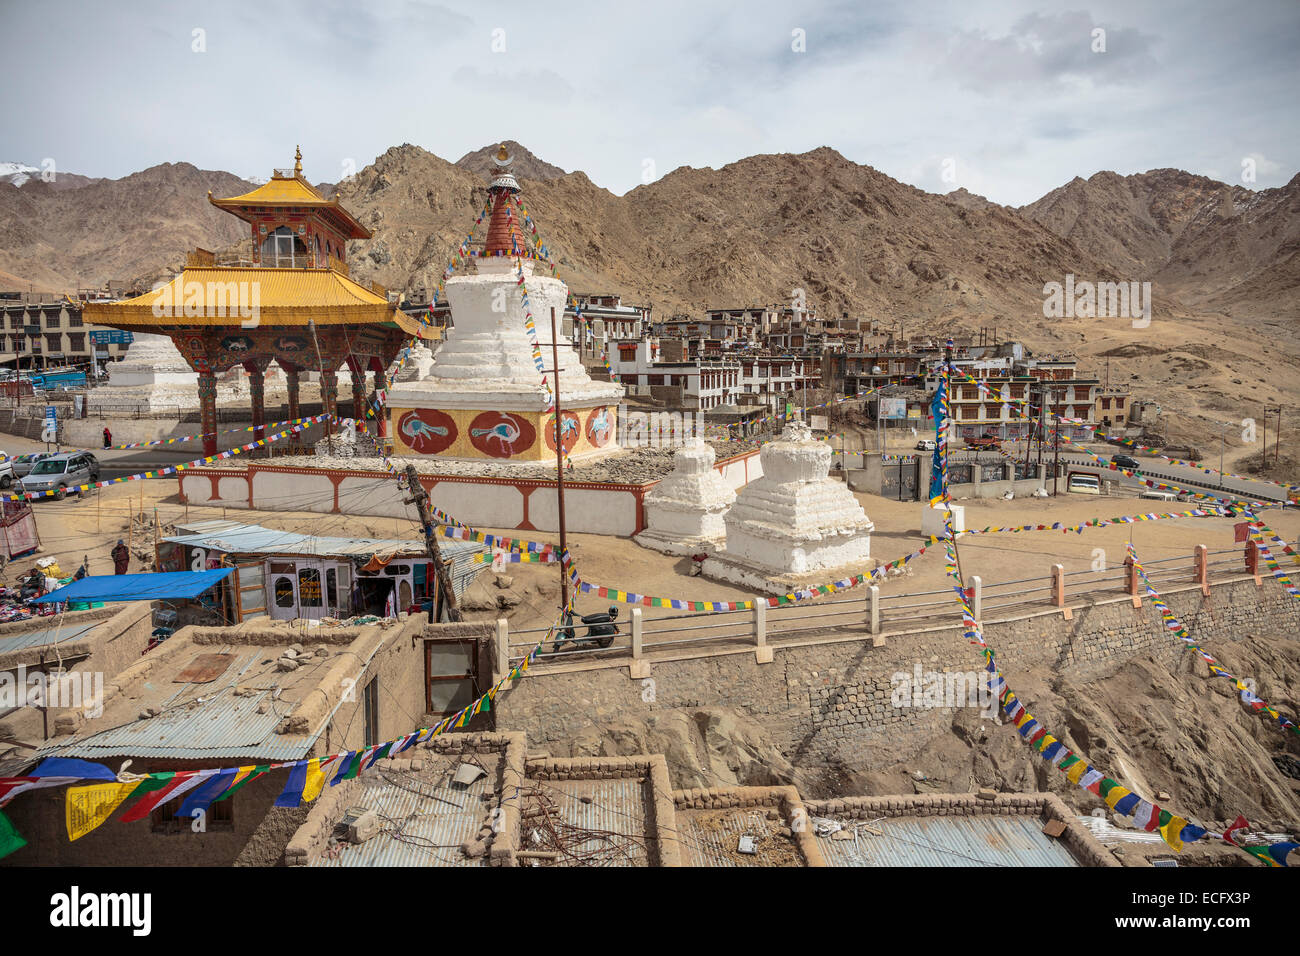 Gebetsfahnen sind über Moti-Markt bis zum Tor der Freundschaft in Leh Stadt aufgereiht.  Freundschaft-Tor ist in der Architektur Tibetisch. Stockfoto